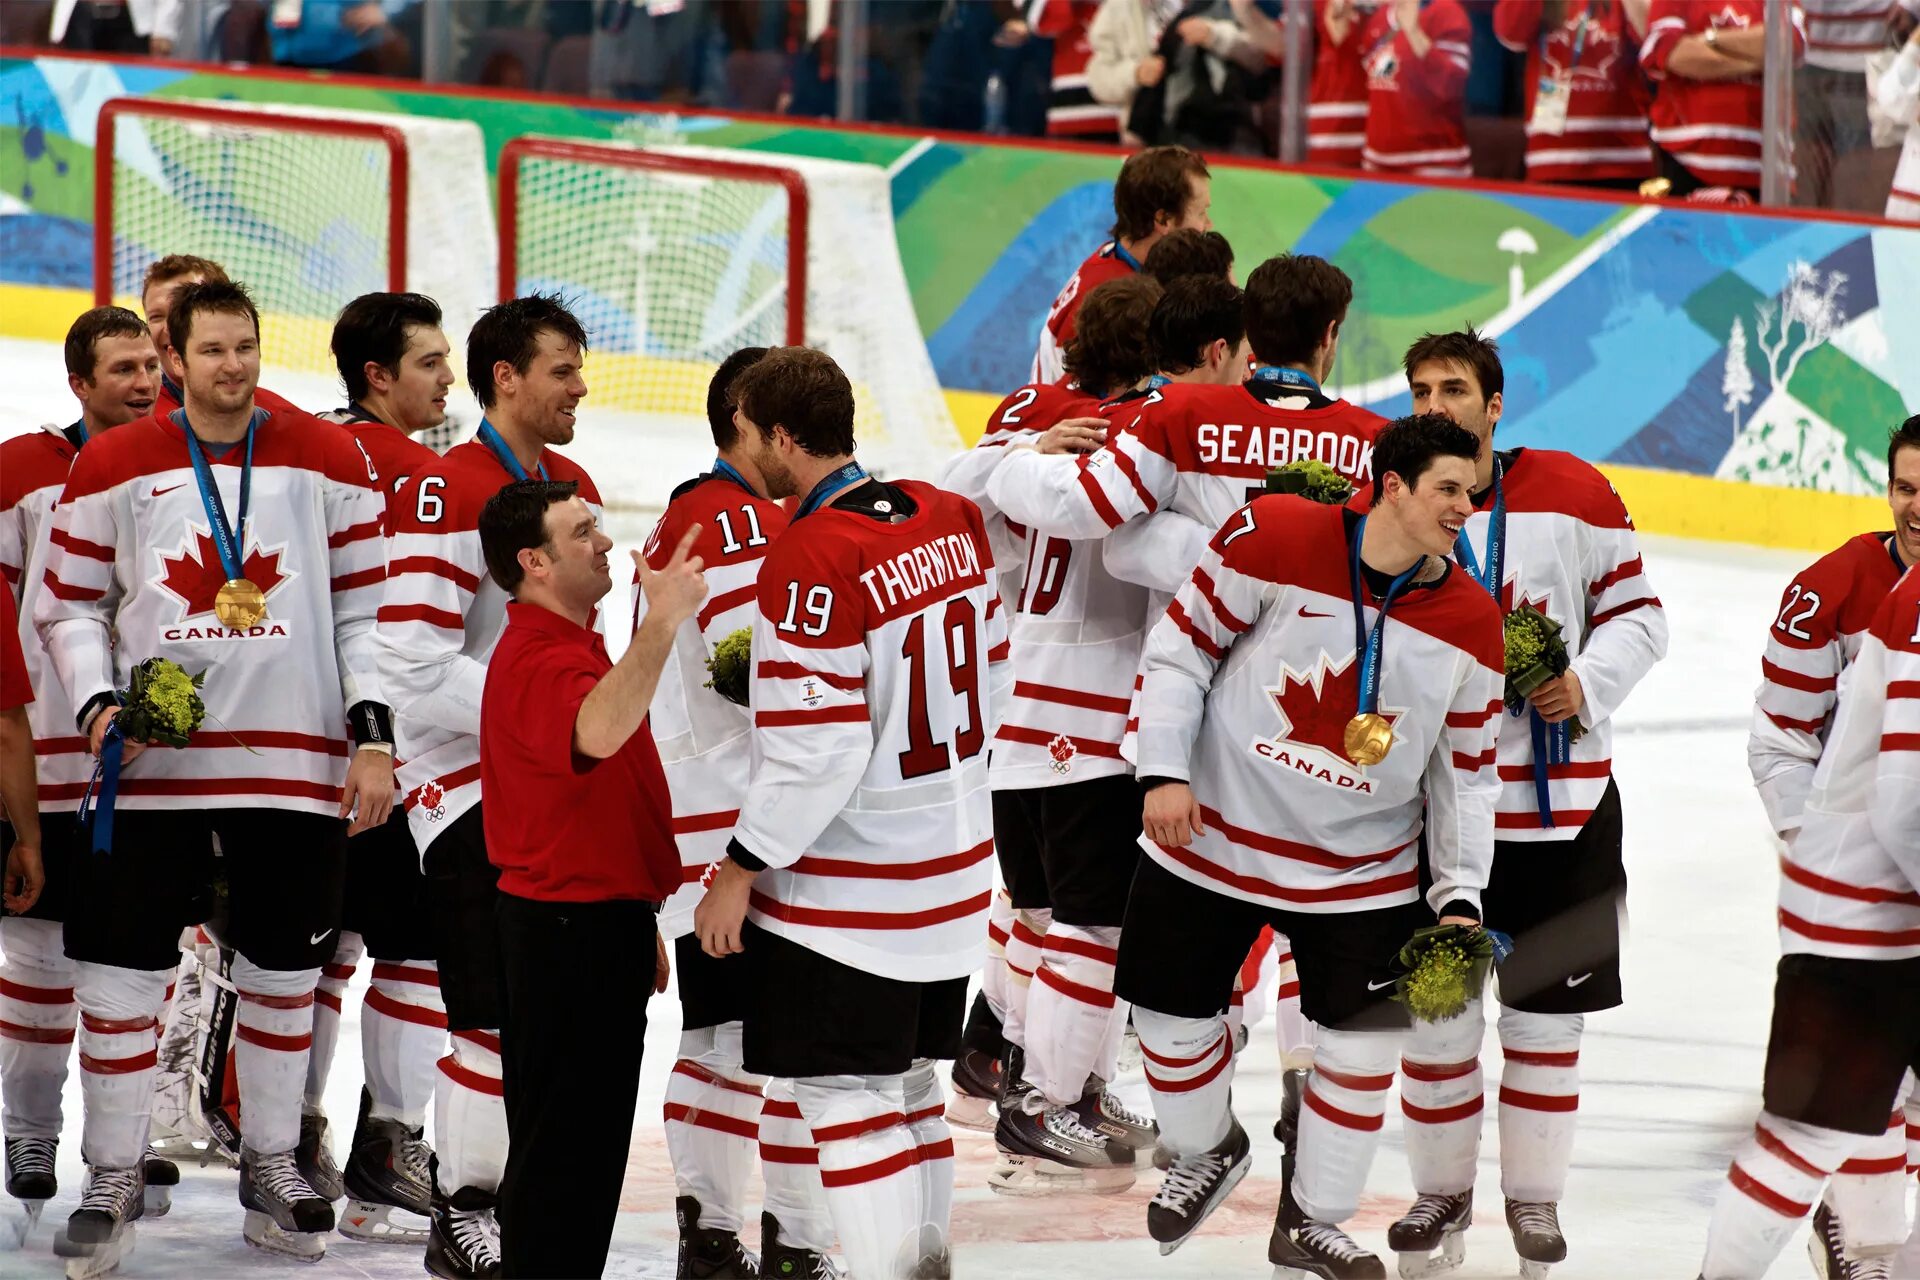 Хоккей с шайбой 2014. Сборная Канады по хоккею на Олимпиаде 2010. Сборная Канады по хоккею с шайбой 2014. Канадская сборная по хоккею 2014 Олимпийский чемпион. Кросби хоккеист Канада.